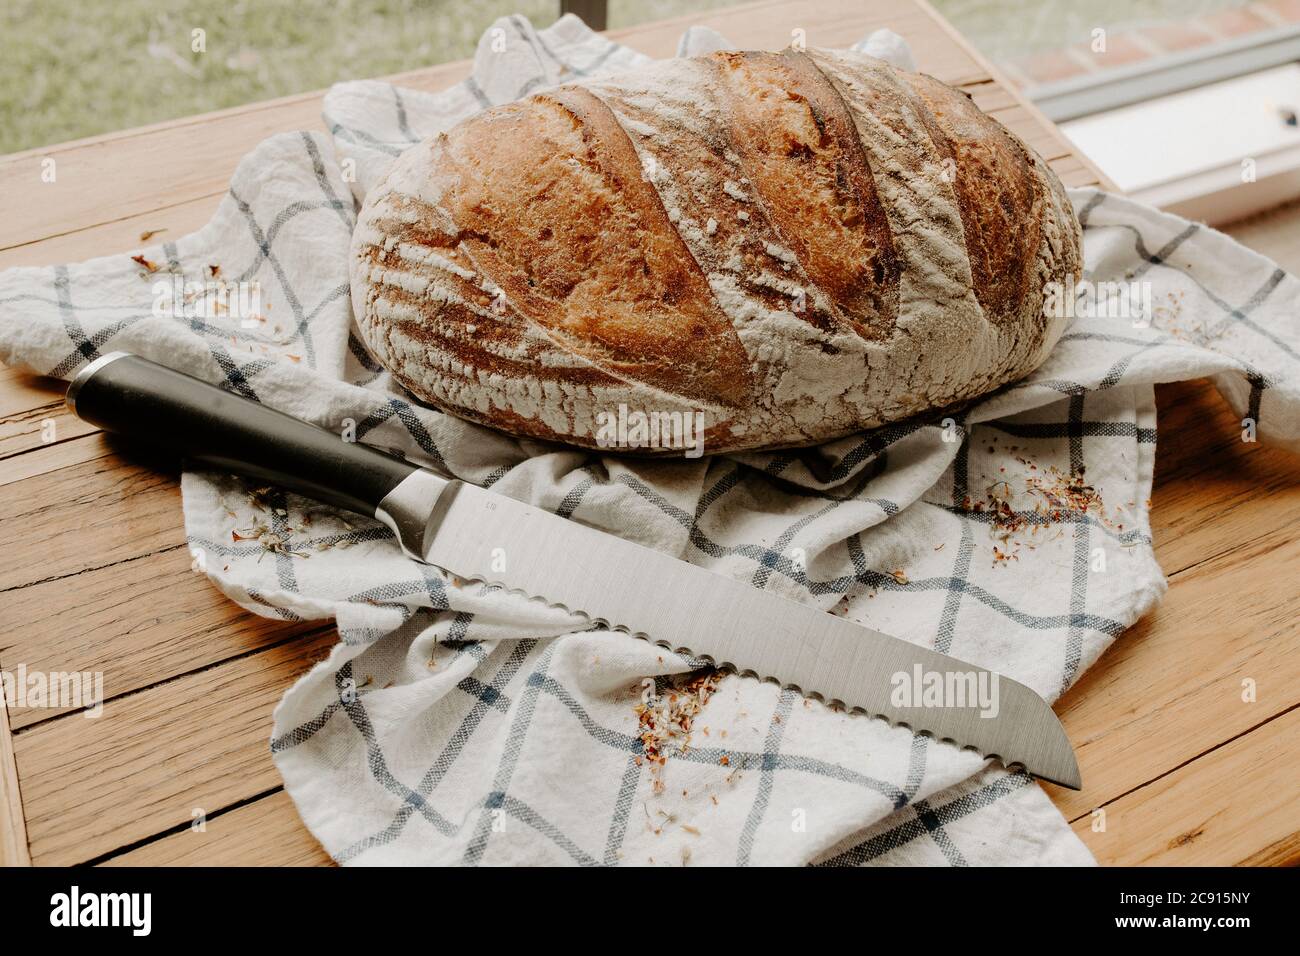 Il pane di pasta acersa fatto in casa raffreddando su un tovagliolo che si trova su un piatto di legno che trita, i fiori secchi selvatici sono spruzzati intorno Foto Stock